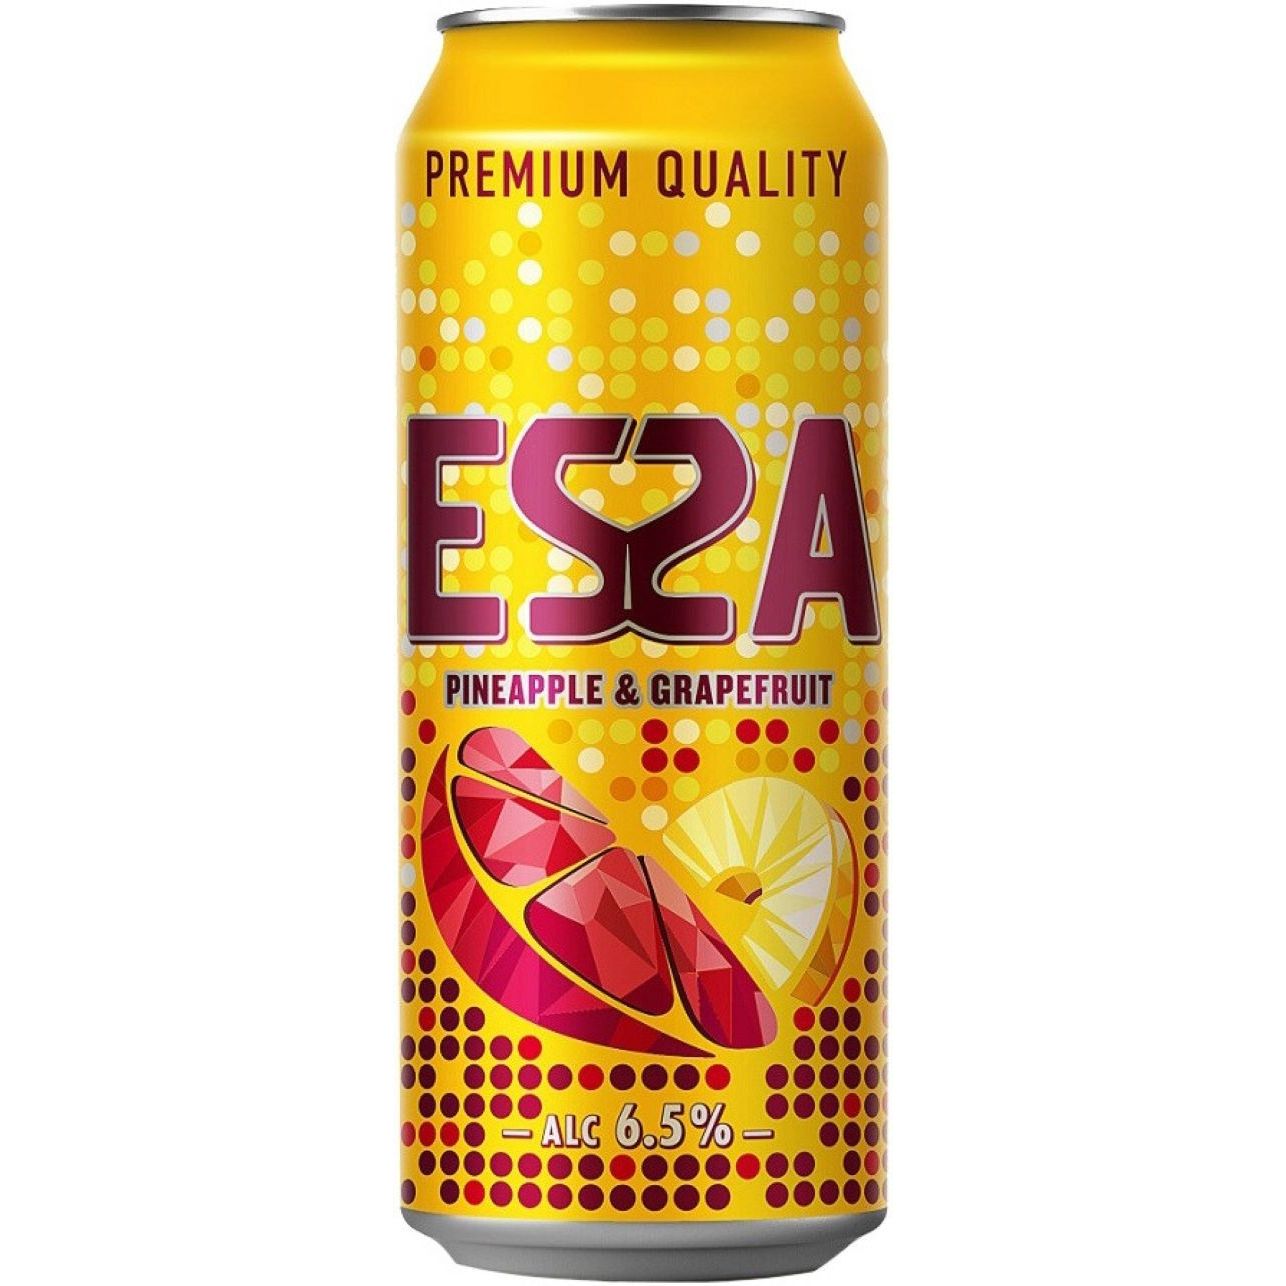 Напиток пивной «Эсса», 0,45 л